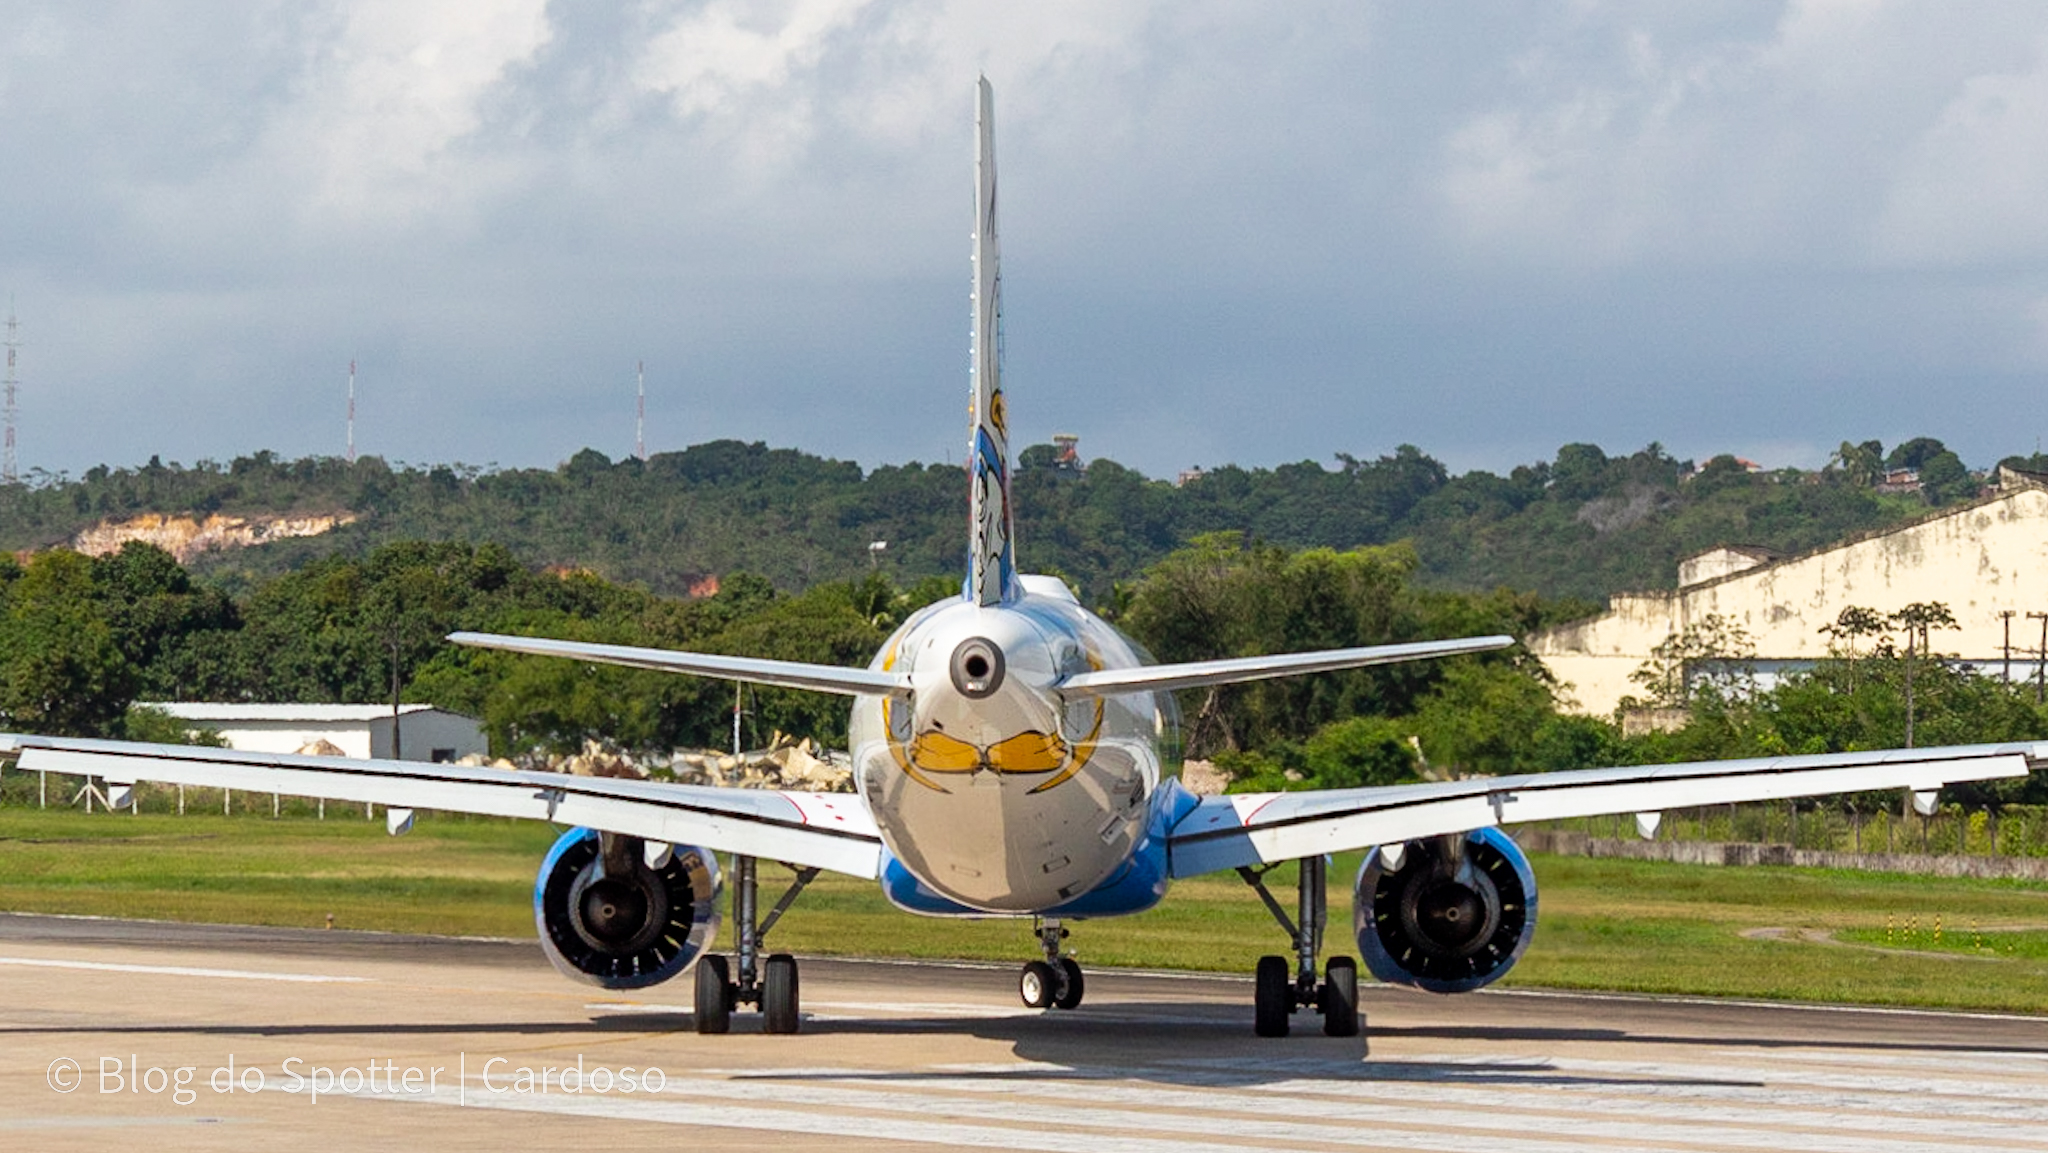 PR-YSI - Pato Donald Nas Nuvens - Airbus A320 NEO AZUL